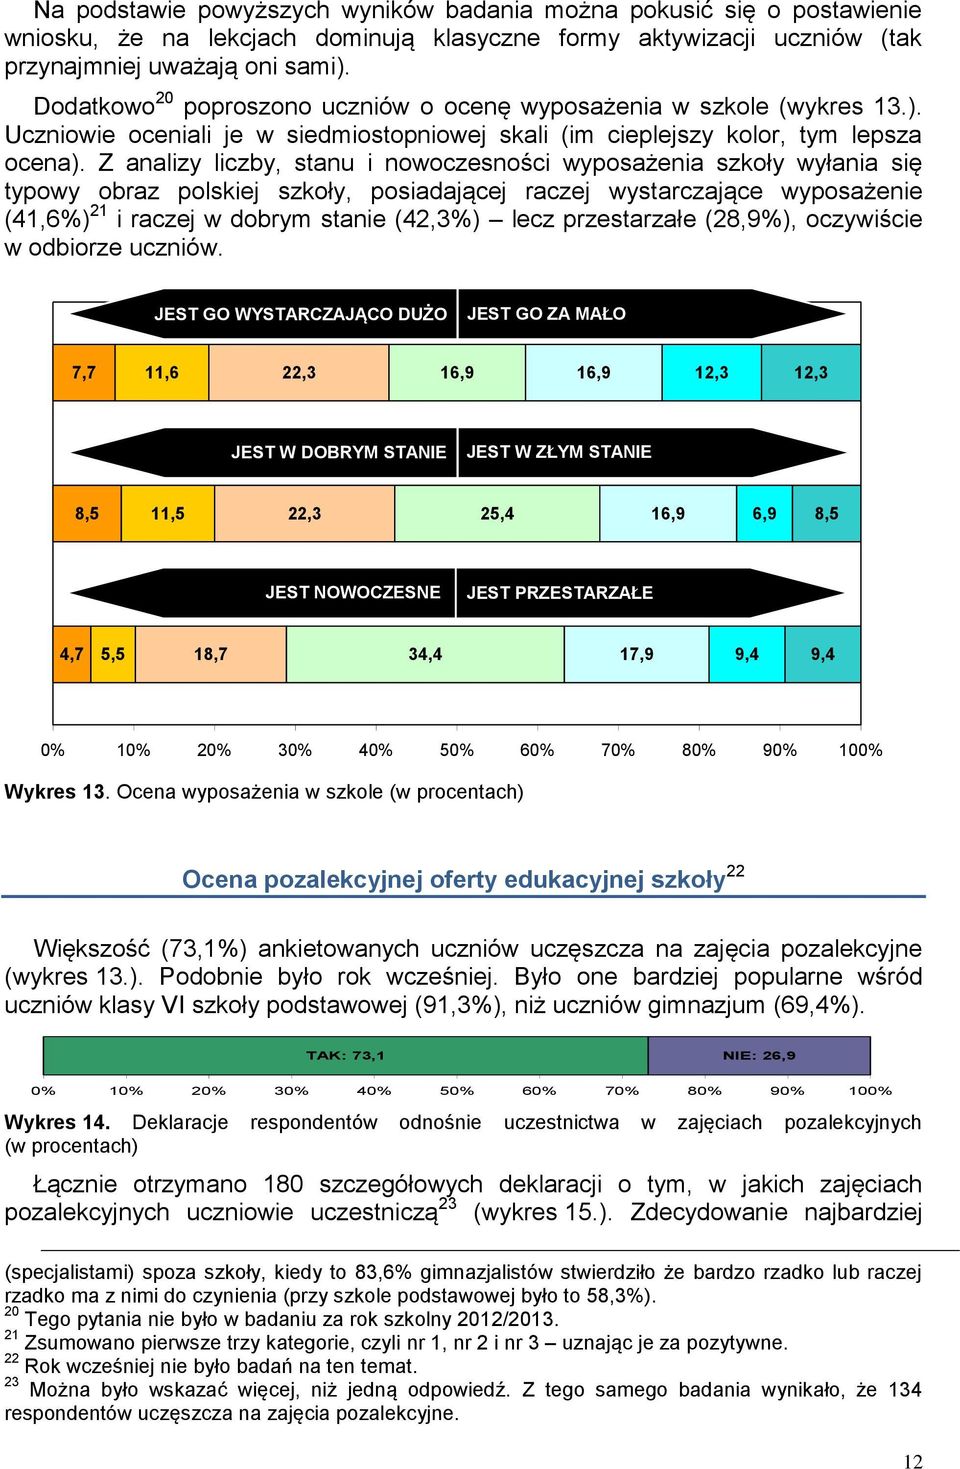 Z analizy liczby, stanu i nowoczesności wyposażenia szkoły wyłania się typowy obraz polskiej szkoły, posiadającej raczej wystarczające wyposażenie (41,6%) 21 i raczej w dobrym stanie (42,3%) lecz